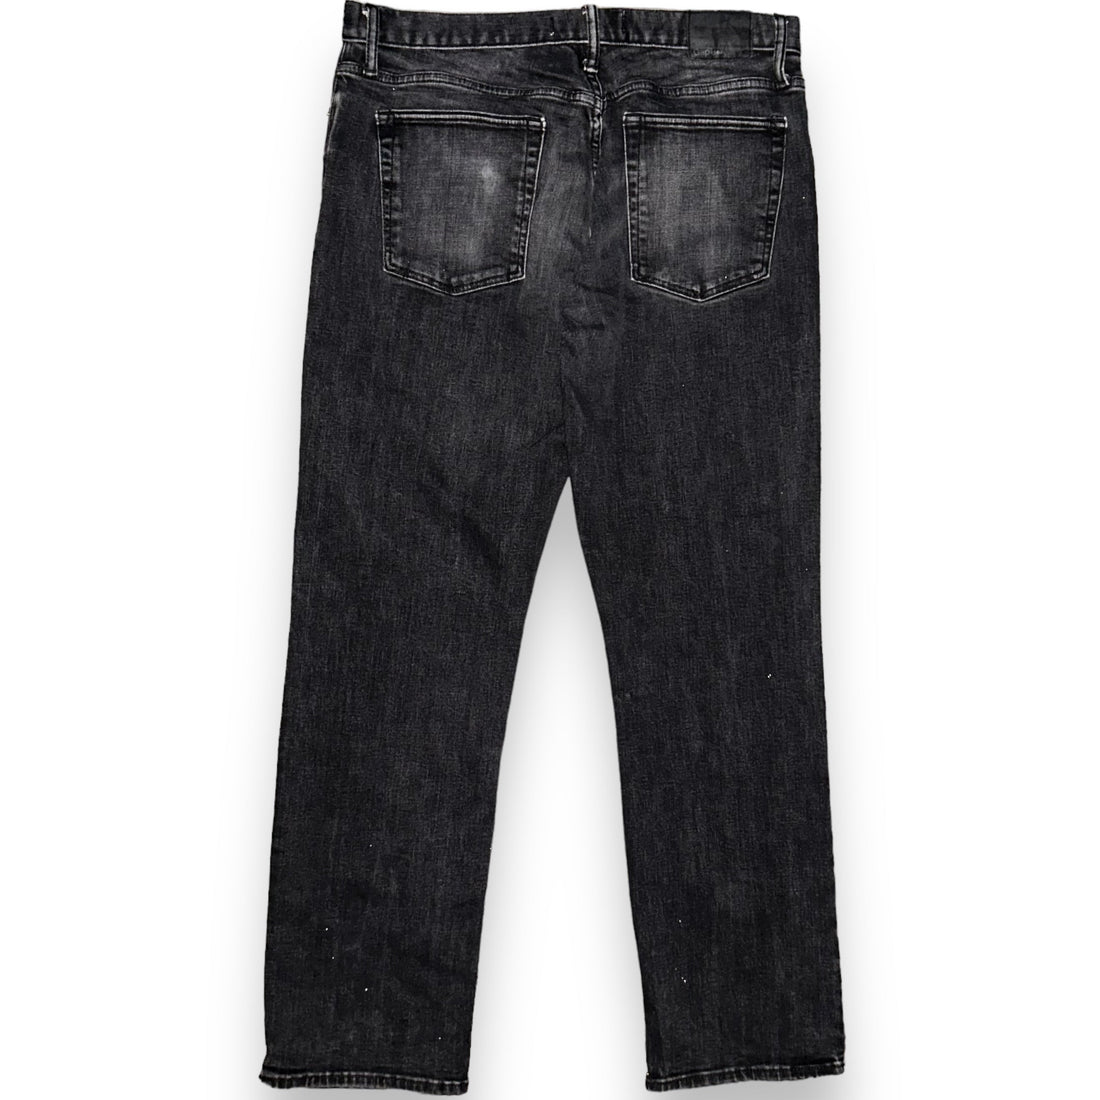 Jeans GAP  (36 USA  XL)